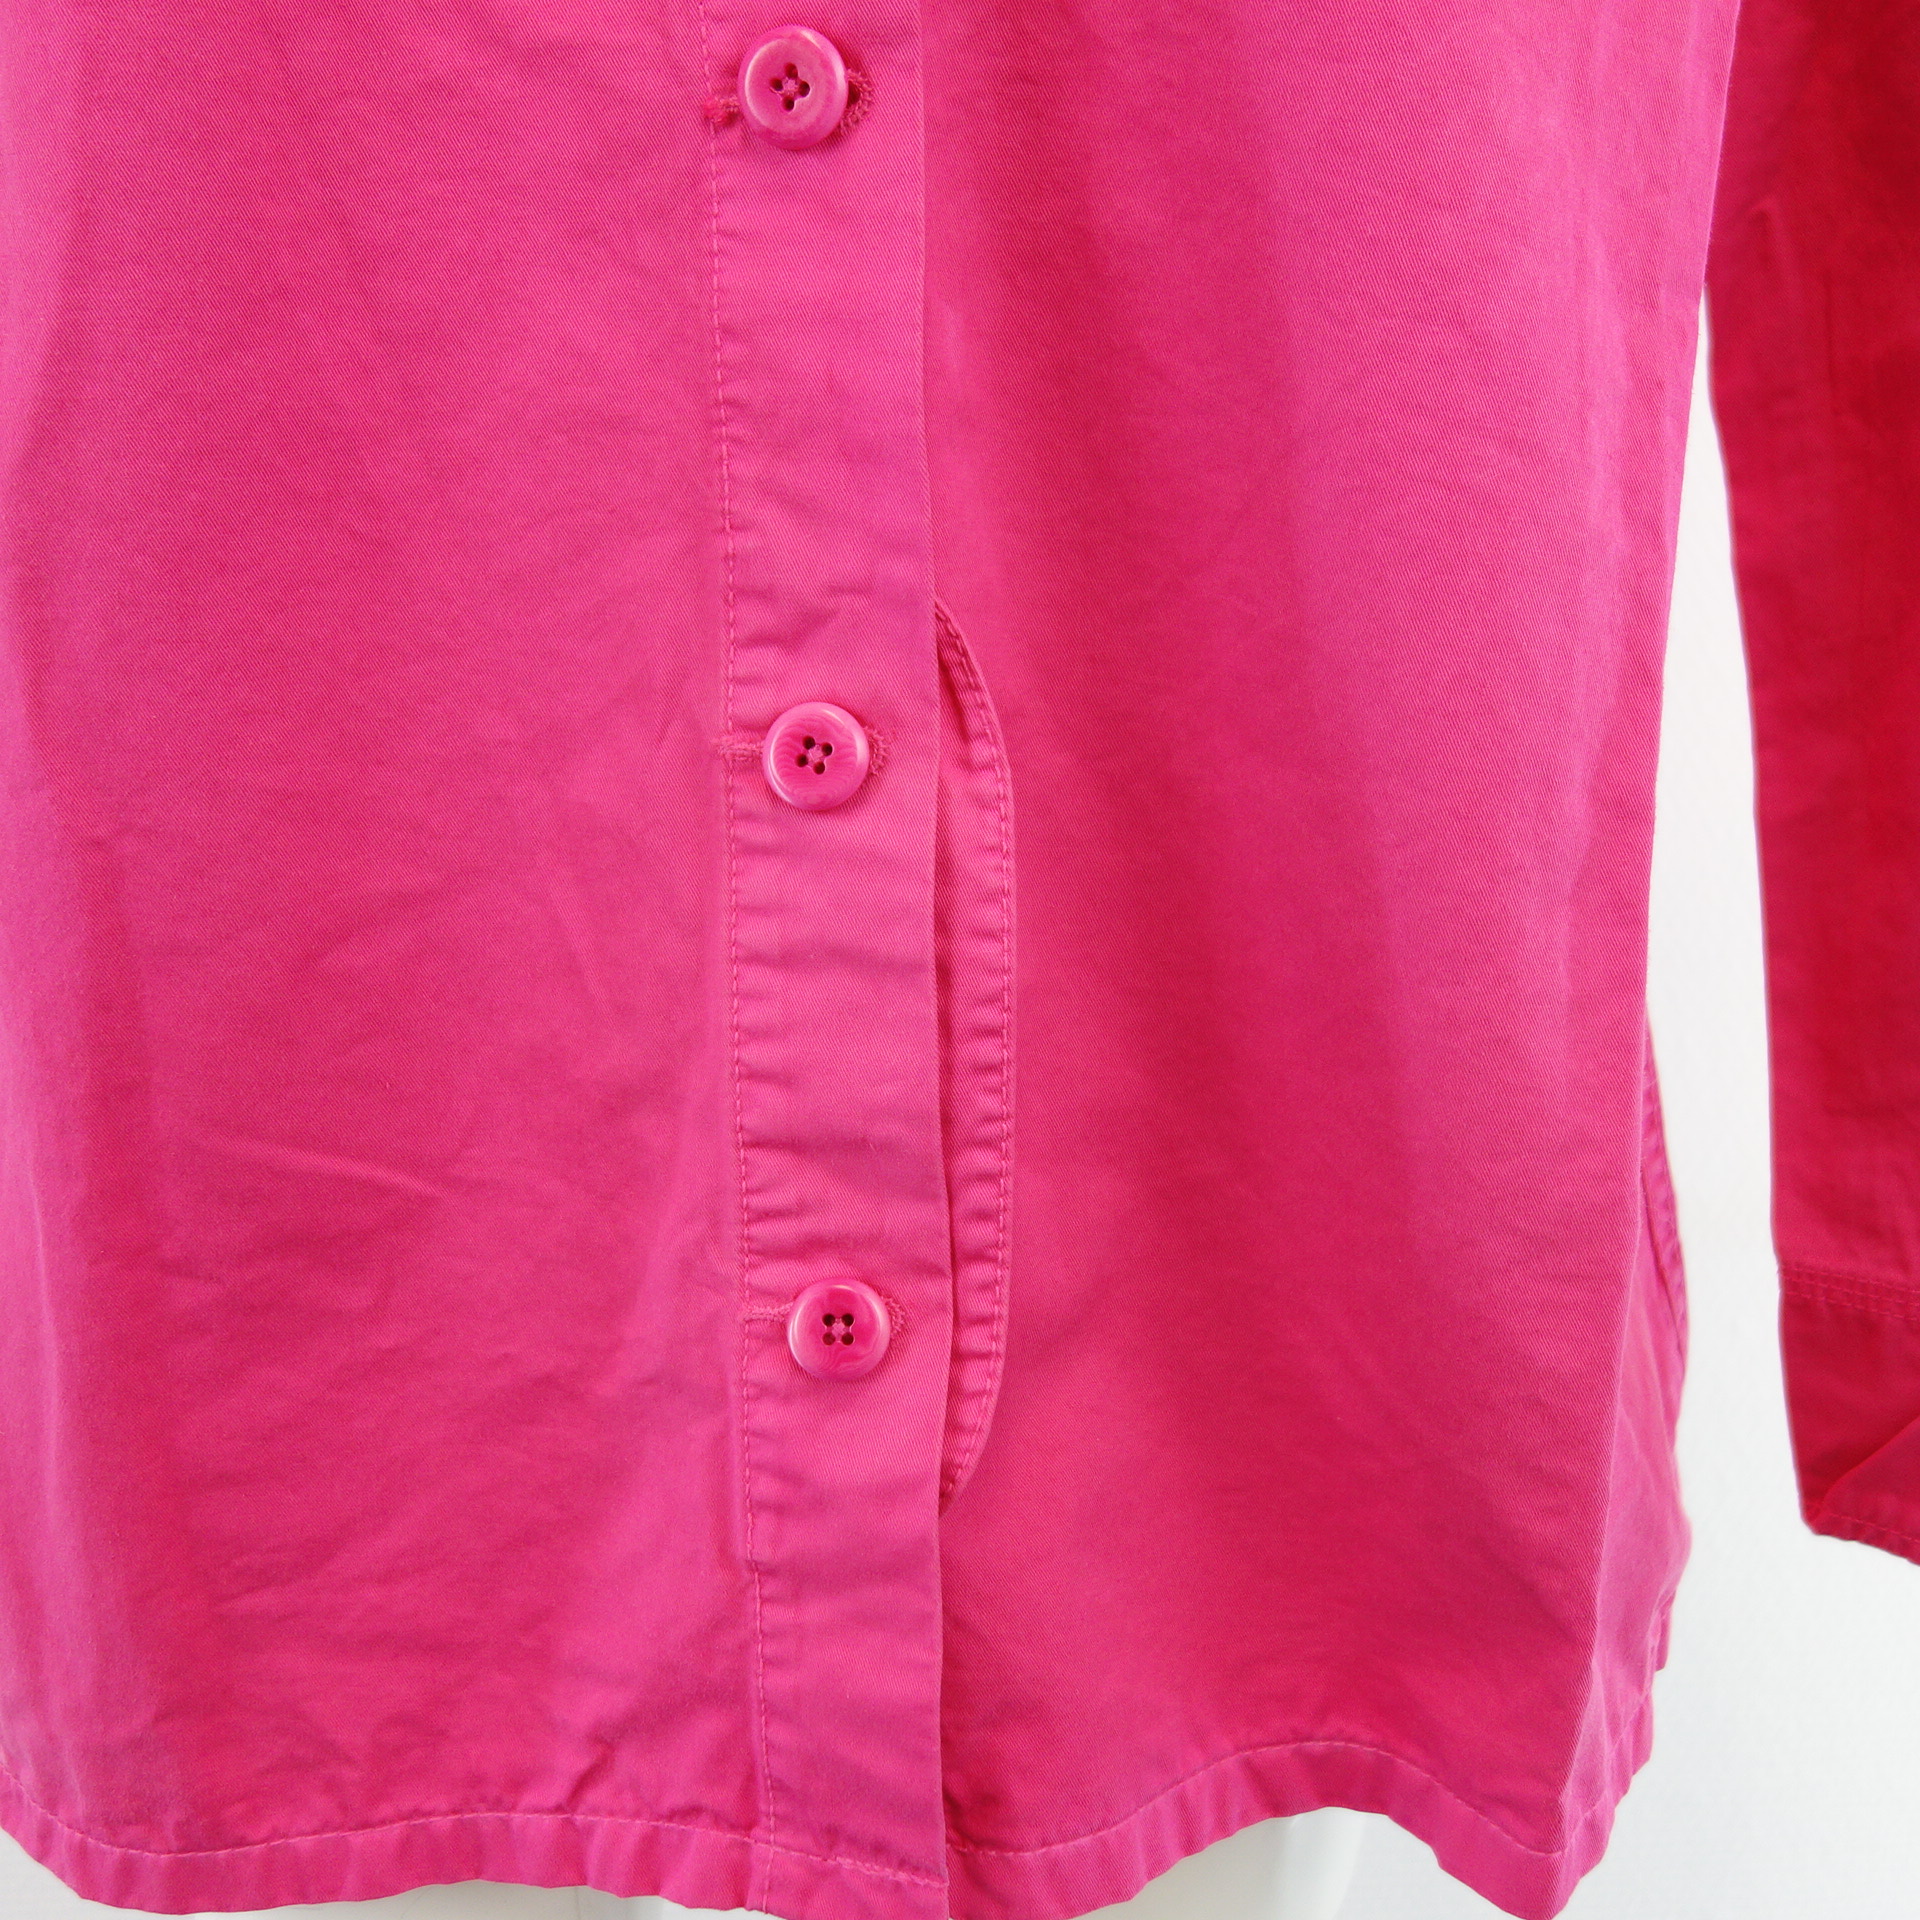 CLOSED Damen Shirt Jeanshemd Damenshirt Oberteil Hemd Denim Rosa Pink 